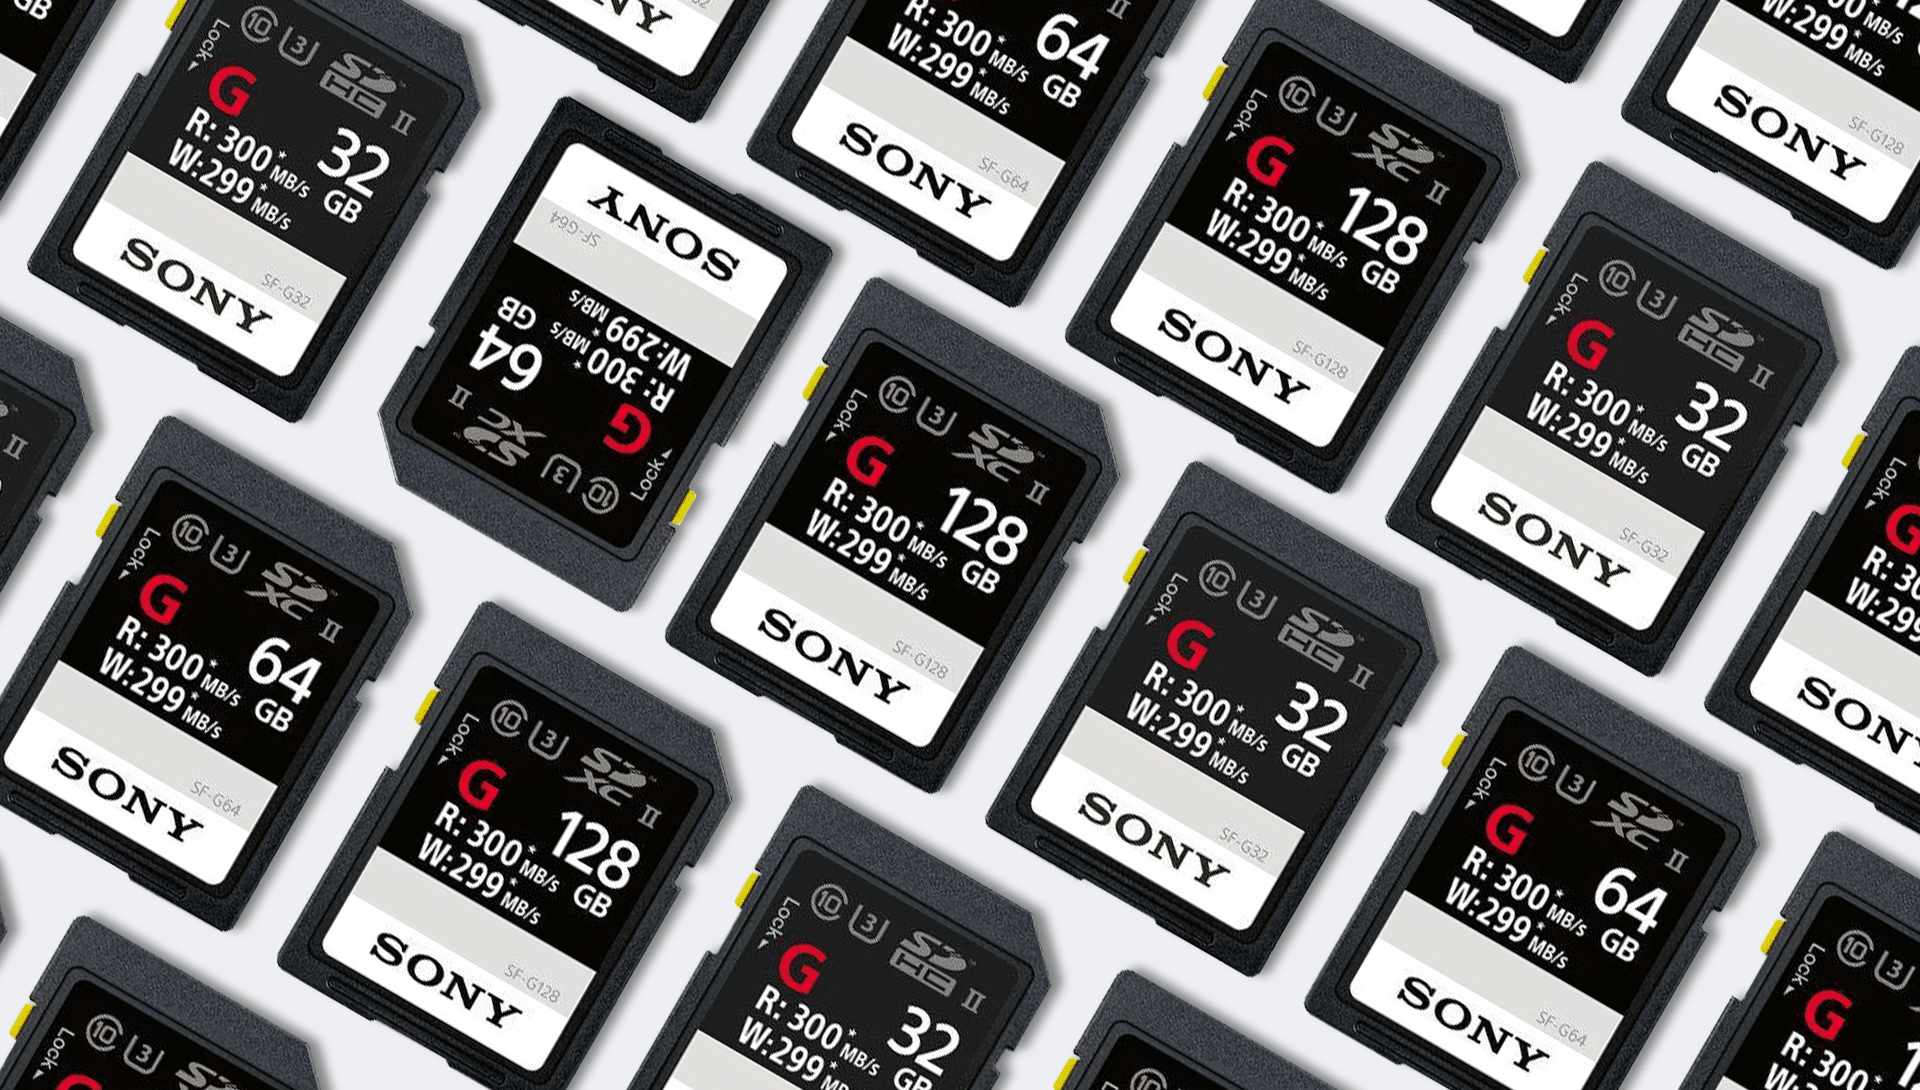 Sony SF-G - Ecco le Schede SD più Veloci al Mondo!